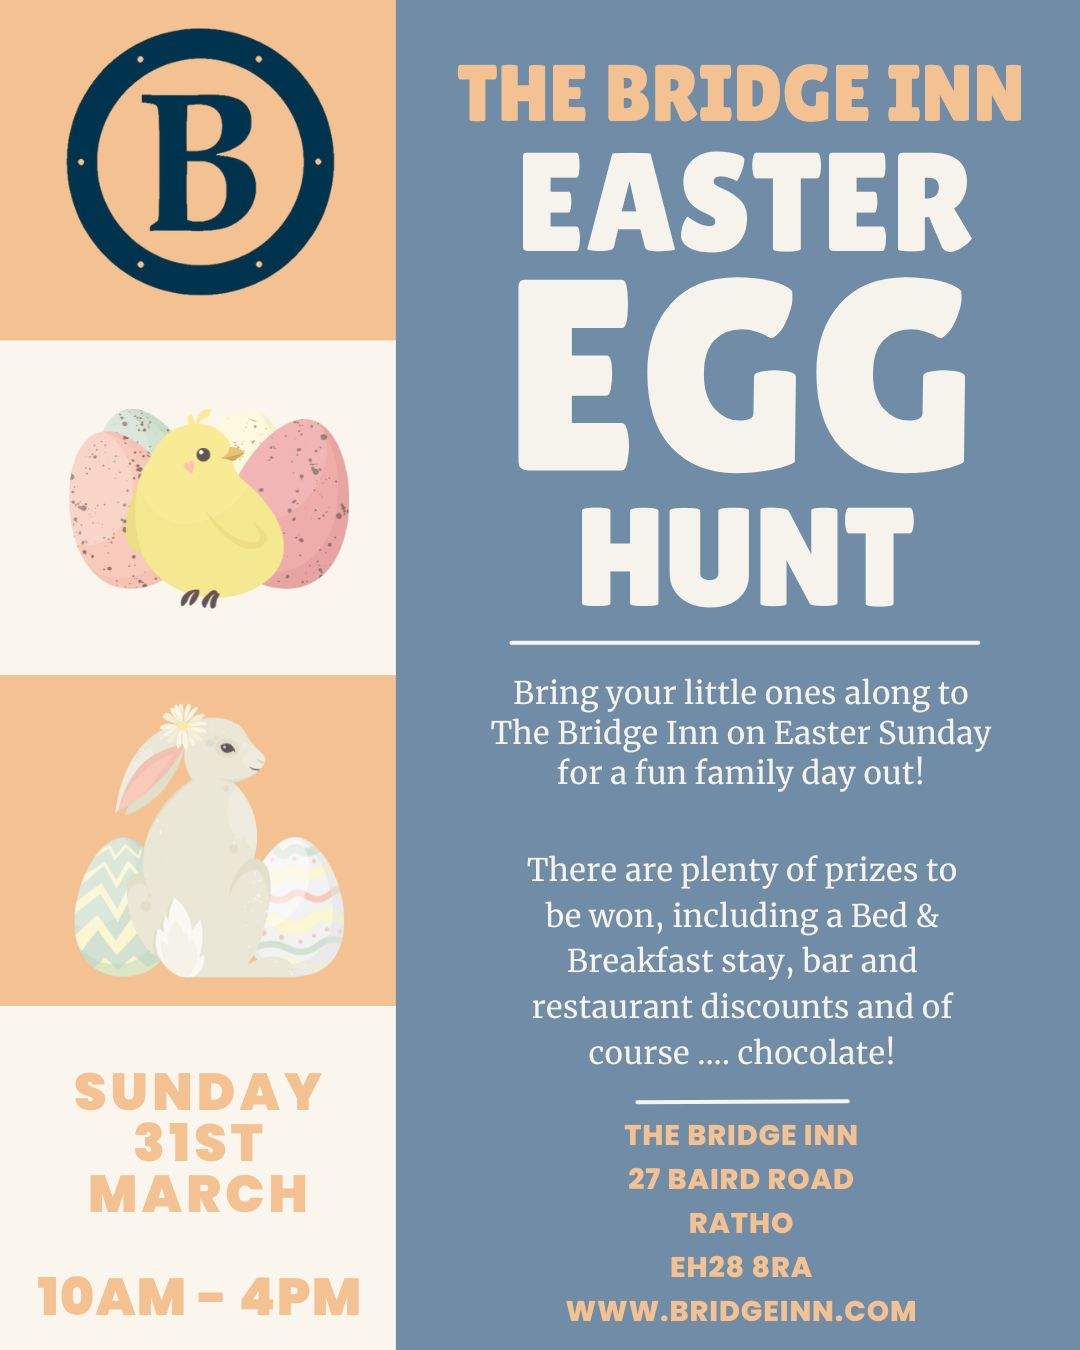 The Bridge Inn Easter egg hunt for easter sunday